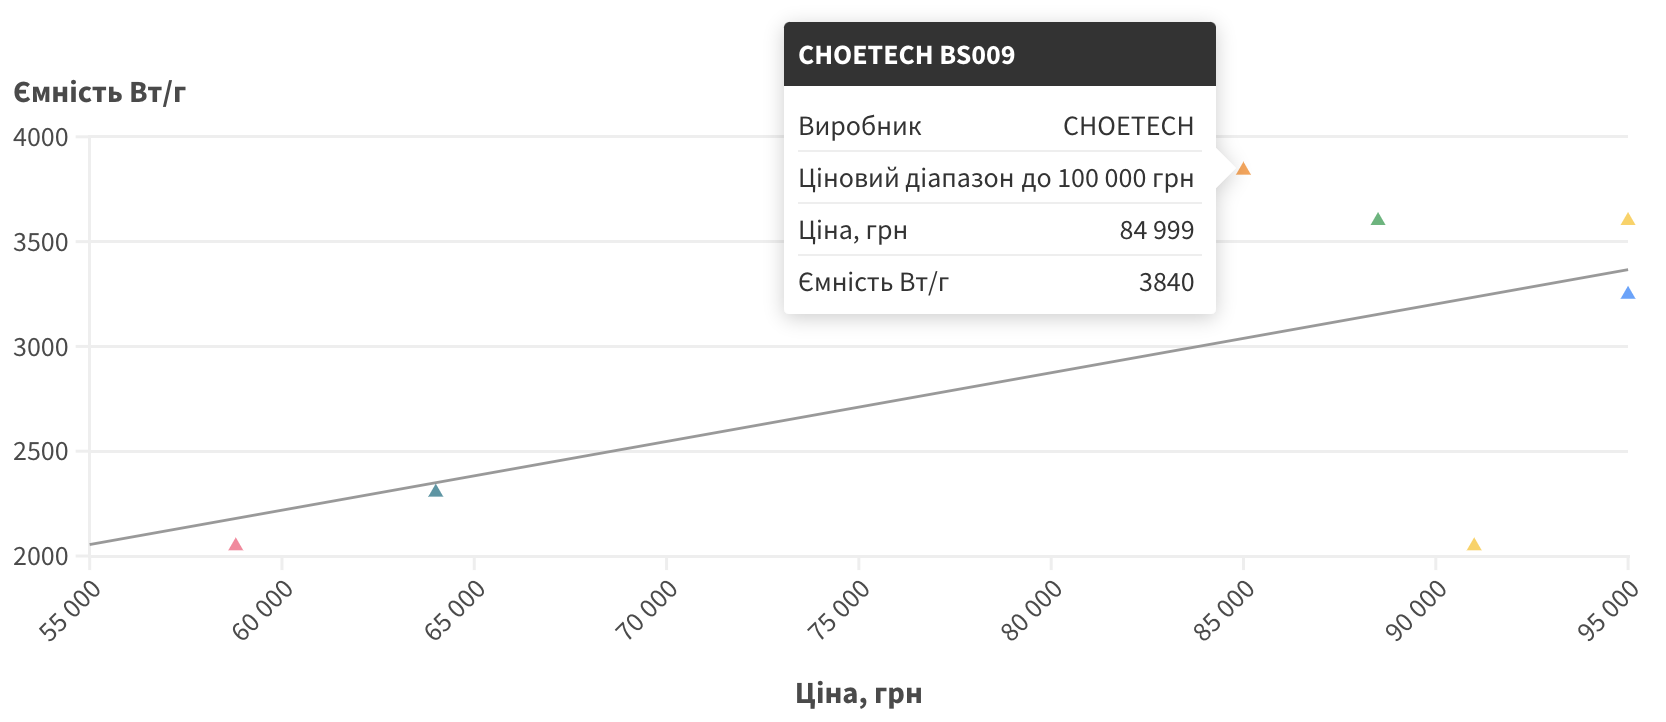 choetech-b5009.png